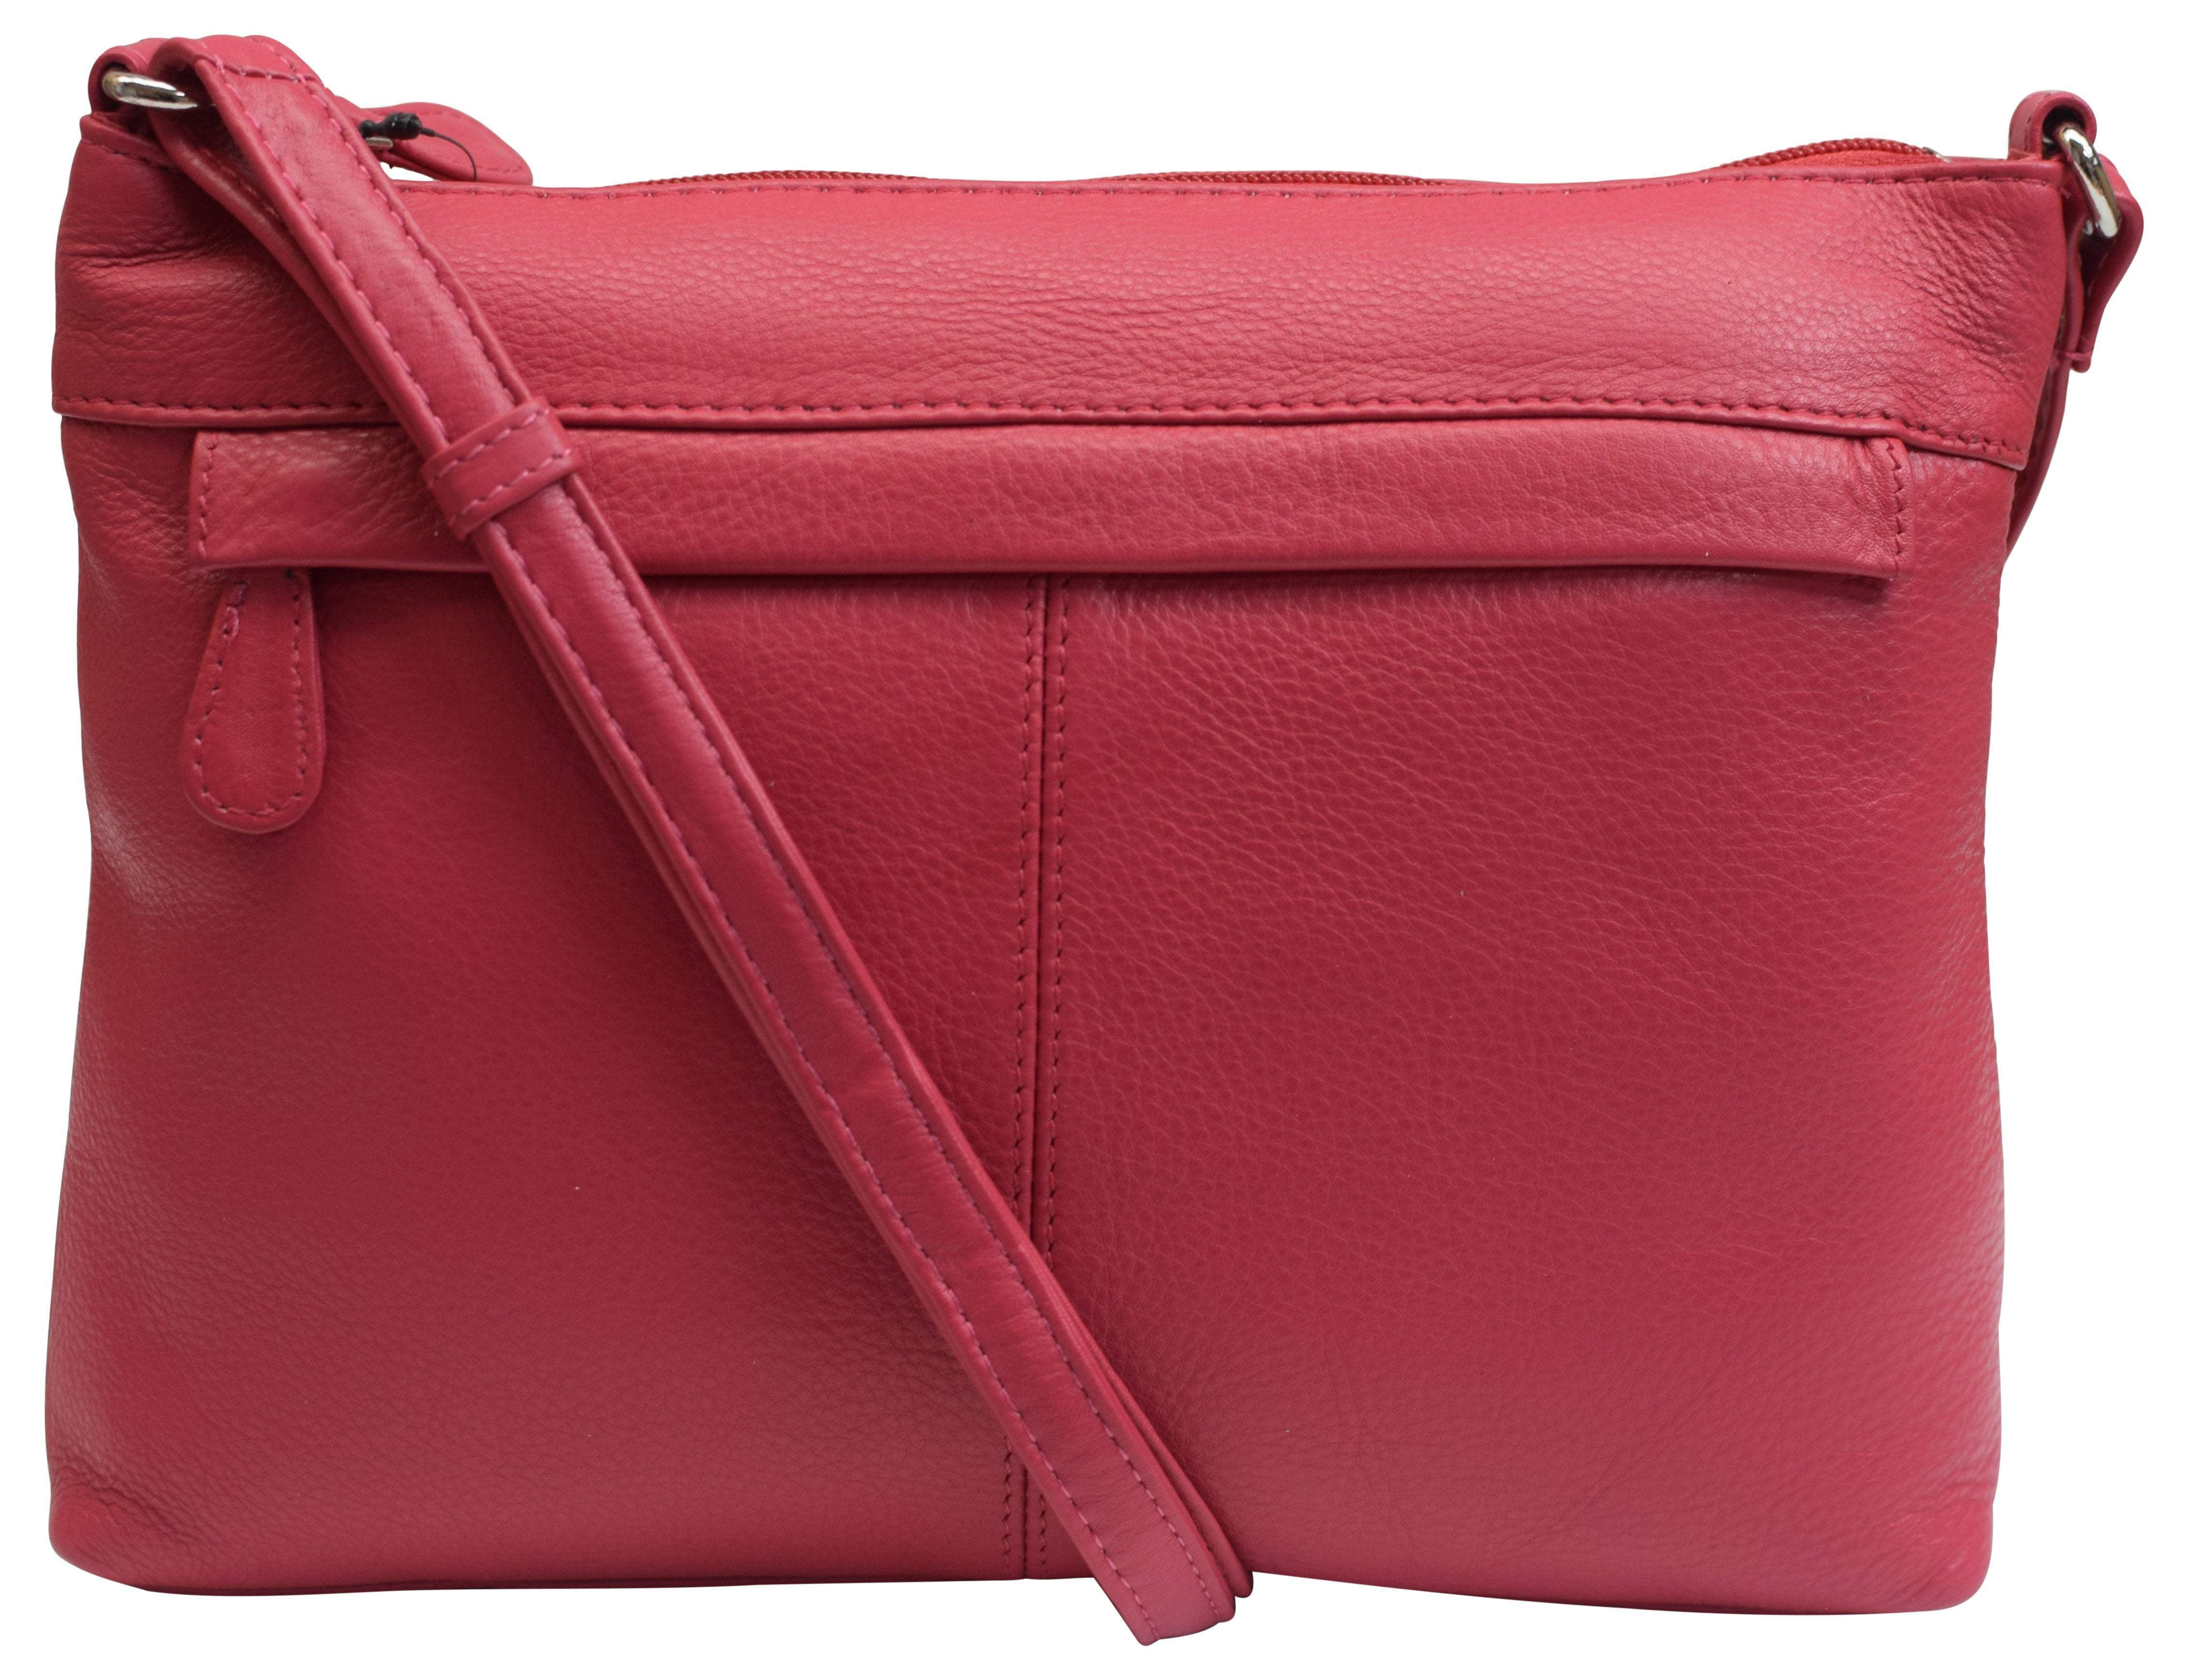 Women's Designer Purse Shoulder Bag Soft Leather Crossbody Handbag for ...